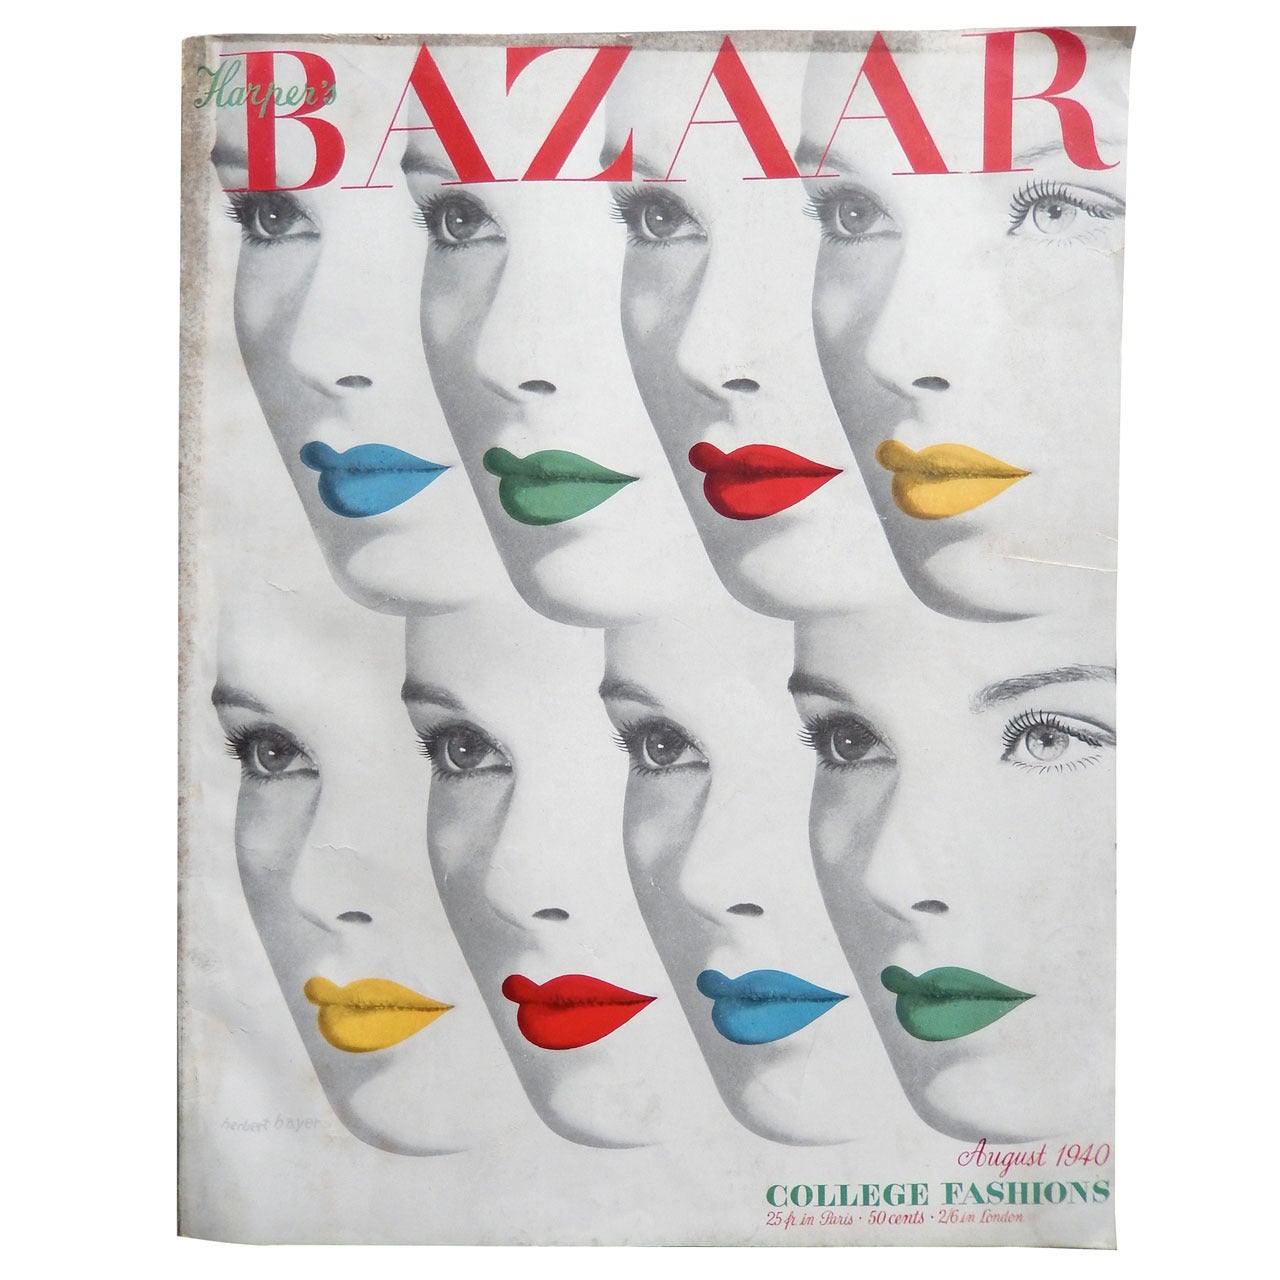 Iconic Harper's Bazaar Cover by Herbert Bayer, 1940